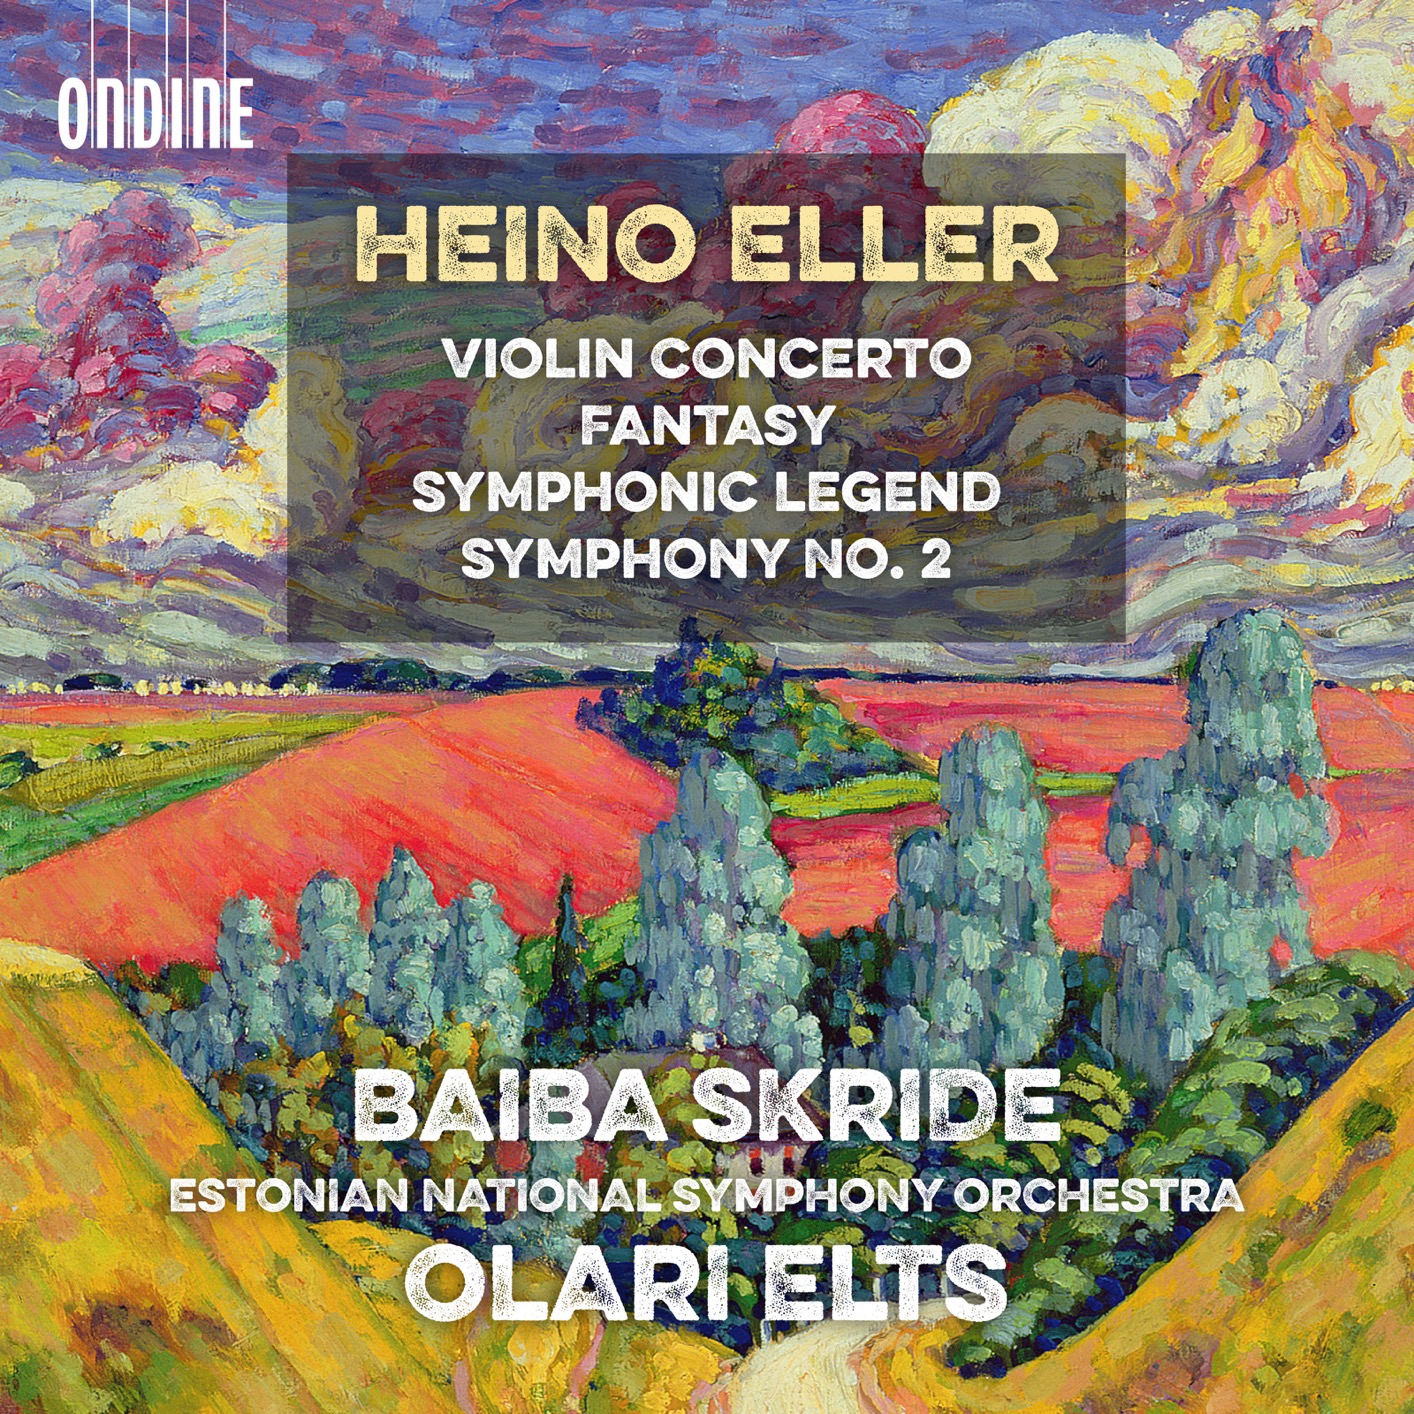 Baiba Skride – Eller: Violin Concerto, Fantasy, Symphonic Legend & Symphony No. 2 (2018) [FLAC 24bit/96kHz]